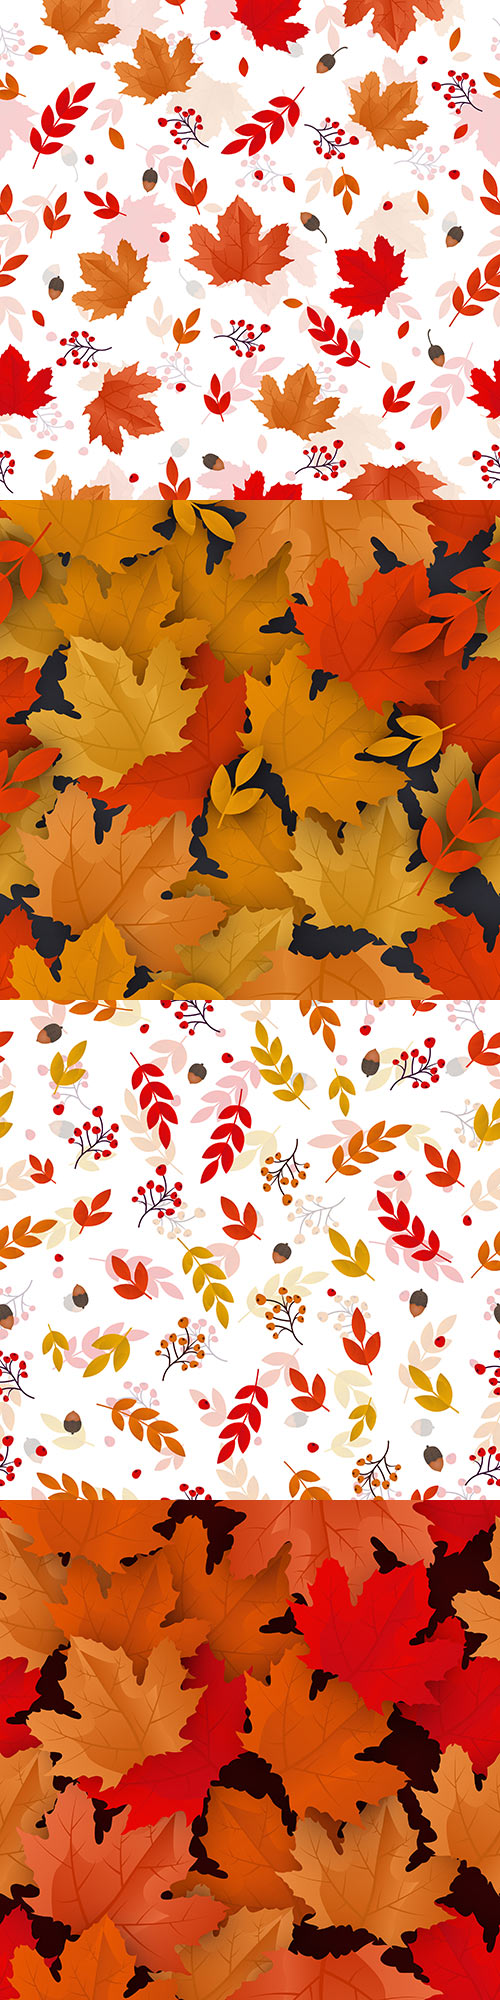 Autumn Pattern Backgrounds 37U9DG